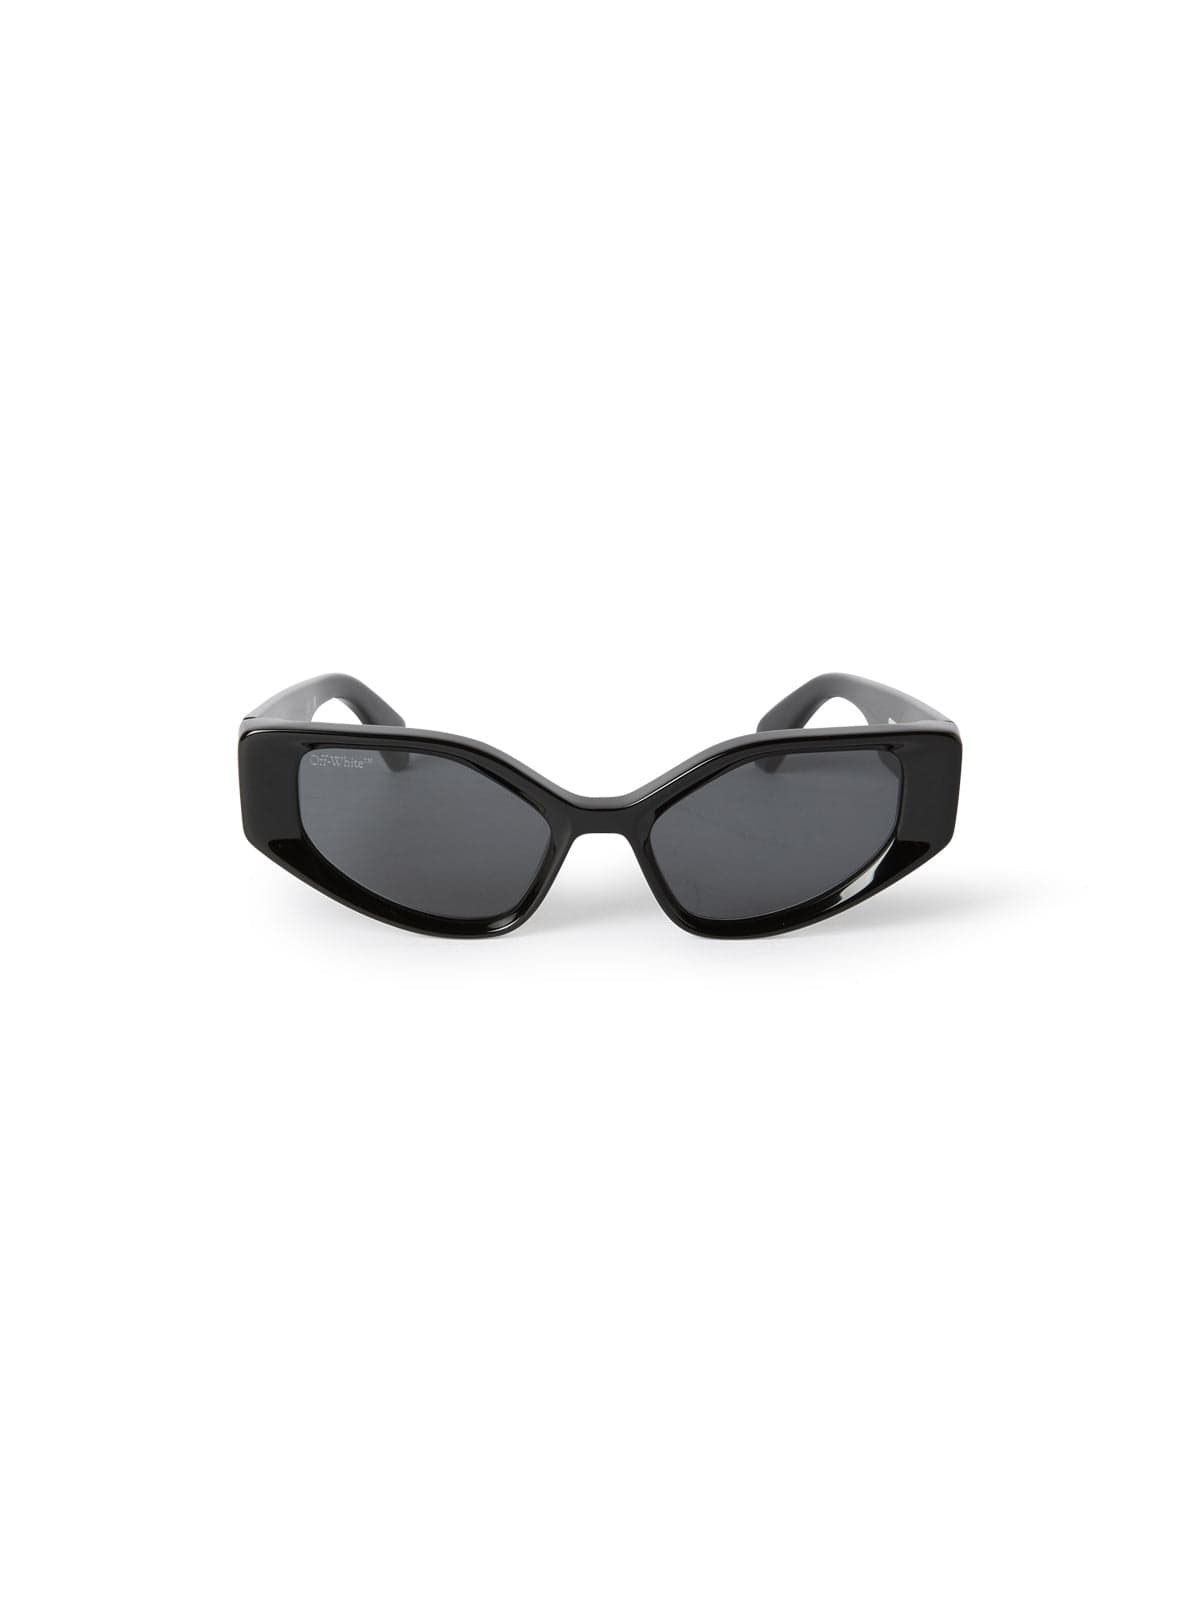 Off-White™ Occhiali da sole Nero / Pentagonale / Acetato di cellulosa Off-White: Occhiali Da Sole Memphis neri con lente fumo